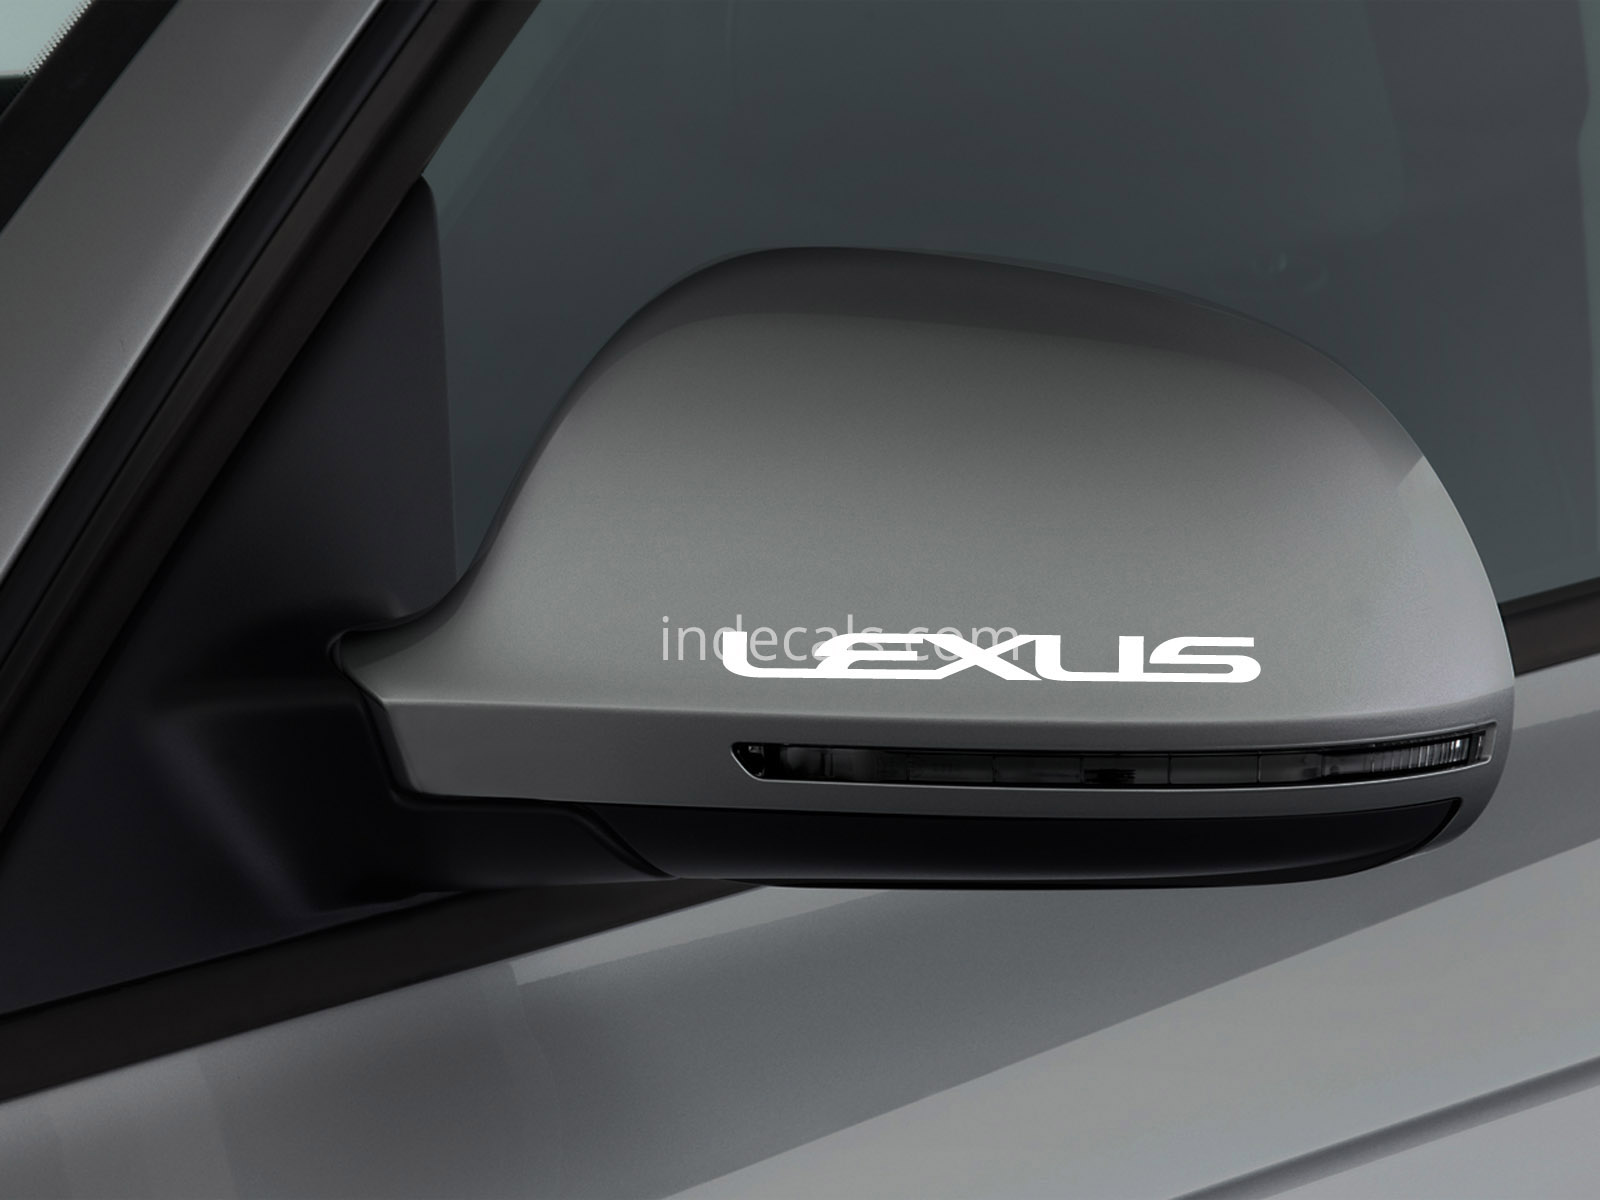 3 x Lexus Stickers for Mirror - White